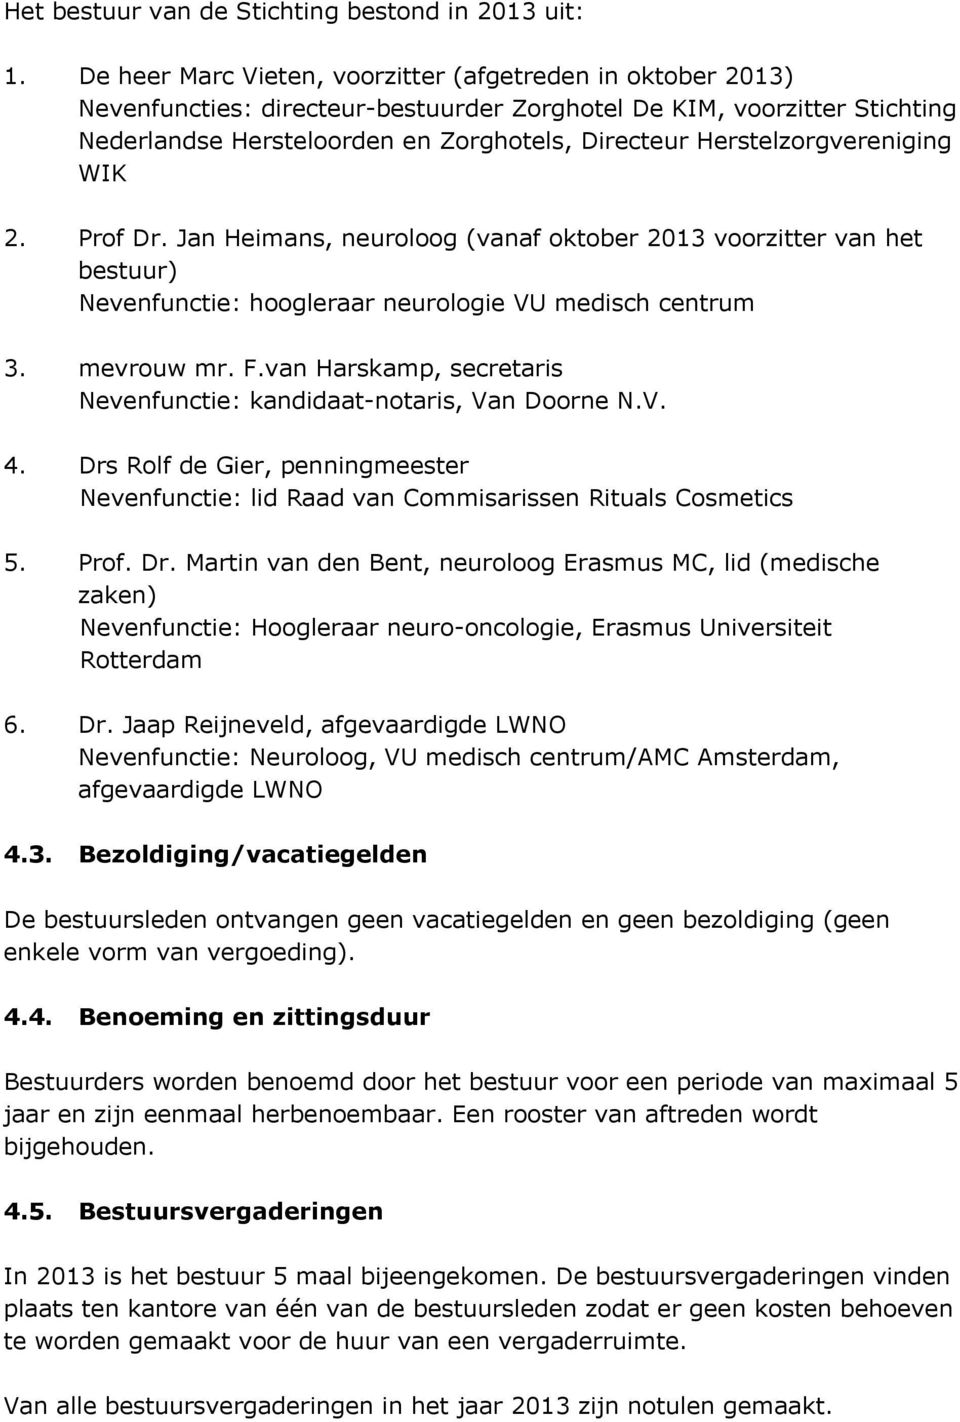 Herstelzorgvereniging WIK 2. Prof Dr. Jan Heimans, neuroloog (vanaf oktober 2013 voorzitter van het bestuur) Nevenfunctie: hoogleraar neurologie VU medisch centrum 3. mevrouw mr. F.